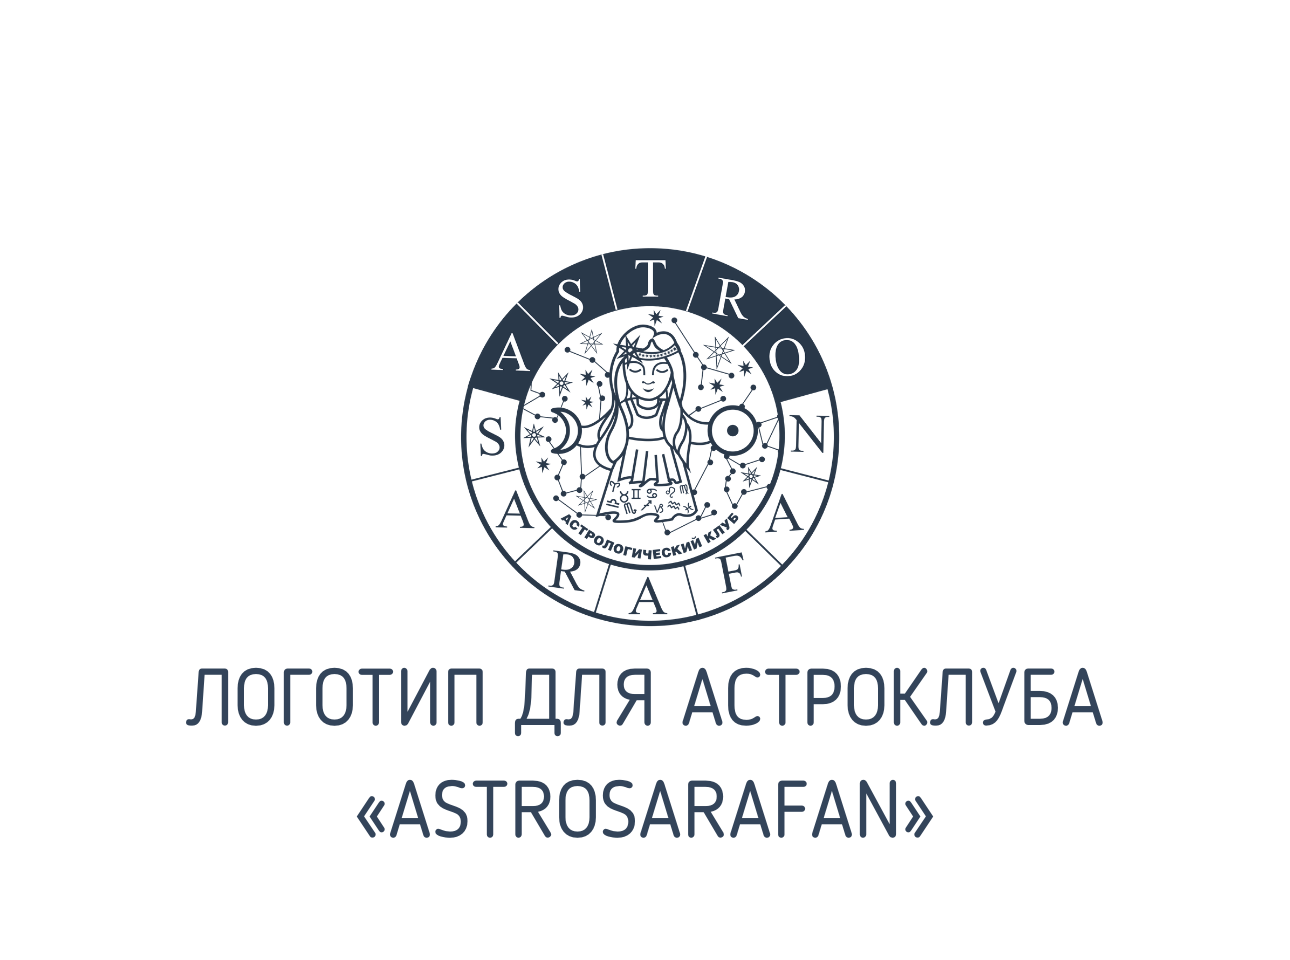 Разработка логотипа для астрологического клуба